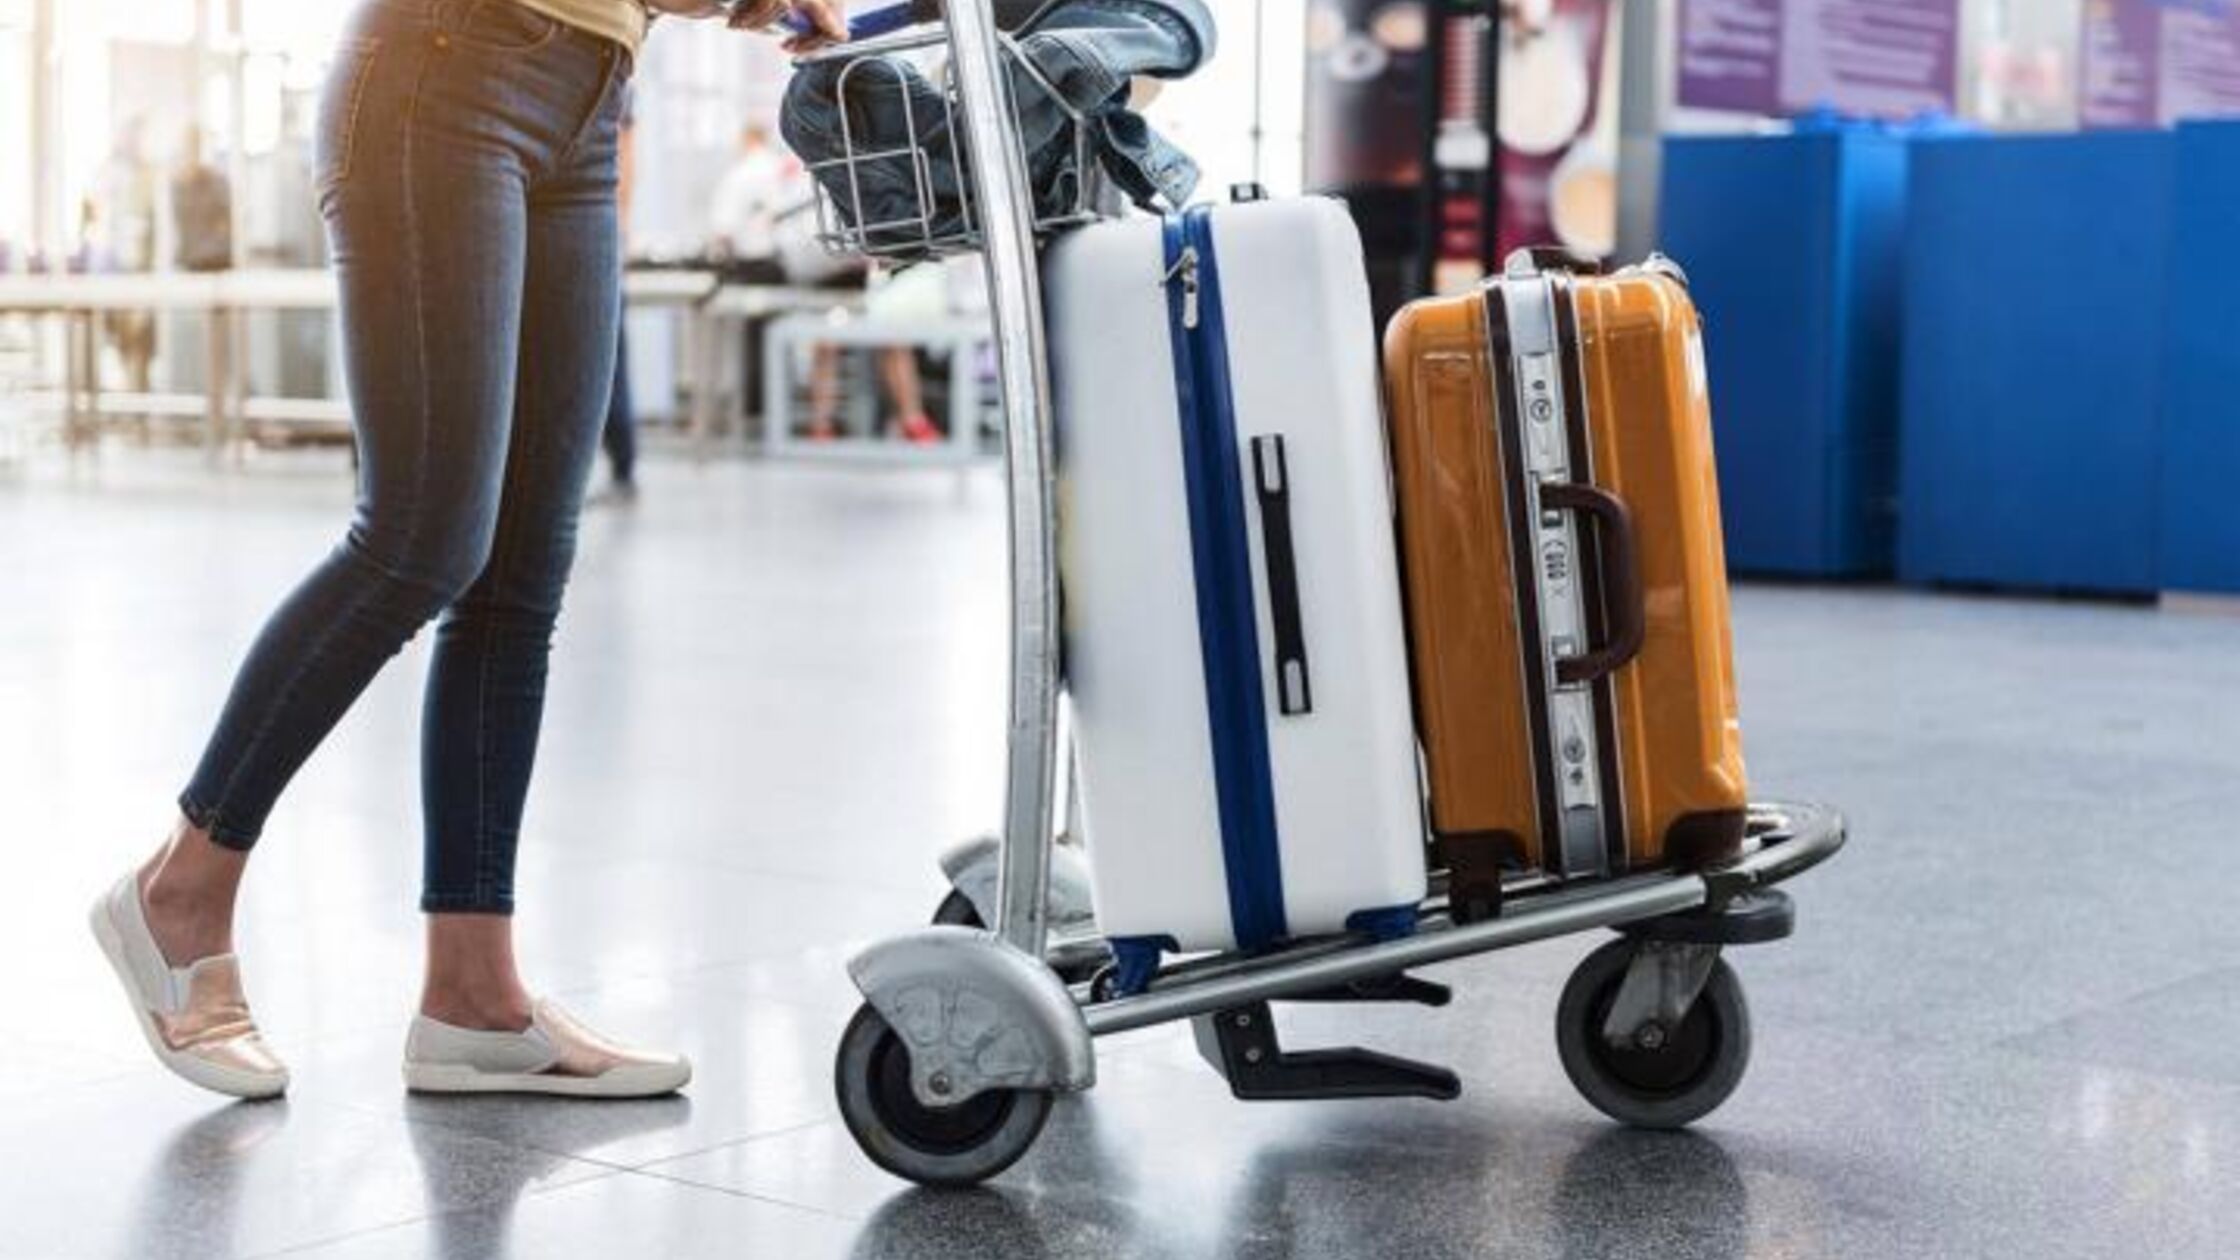 Frau mit Koffern am Flughafen